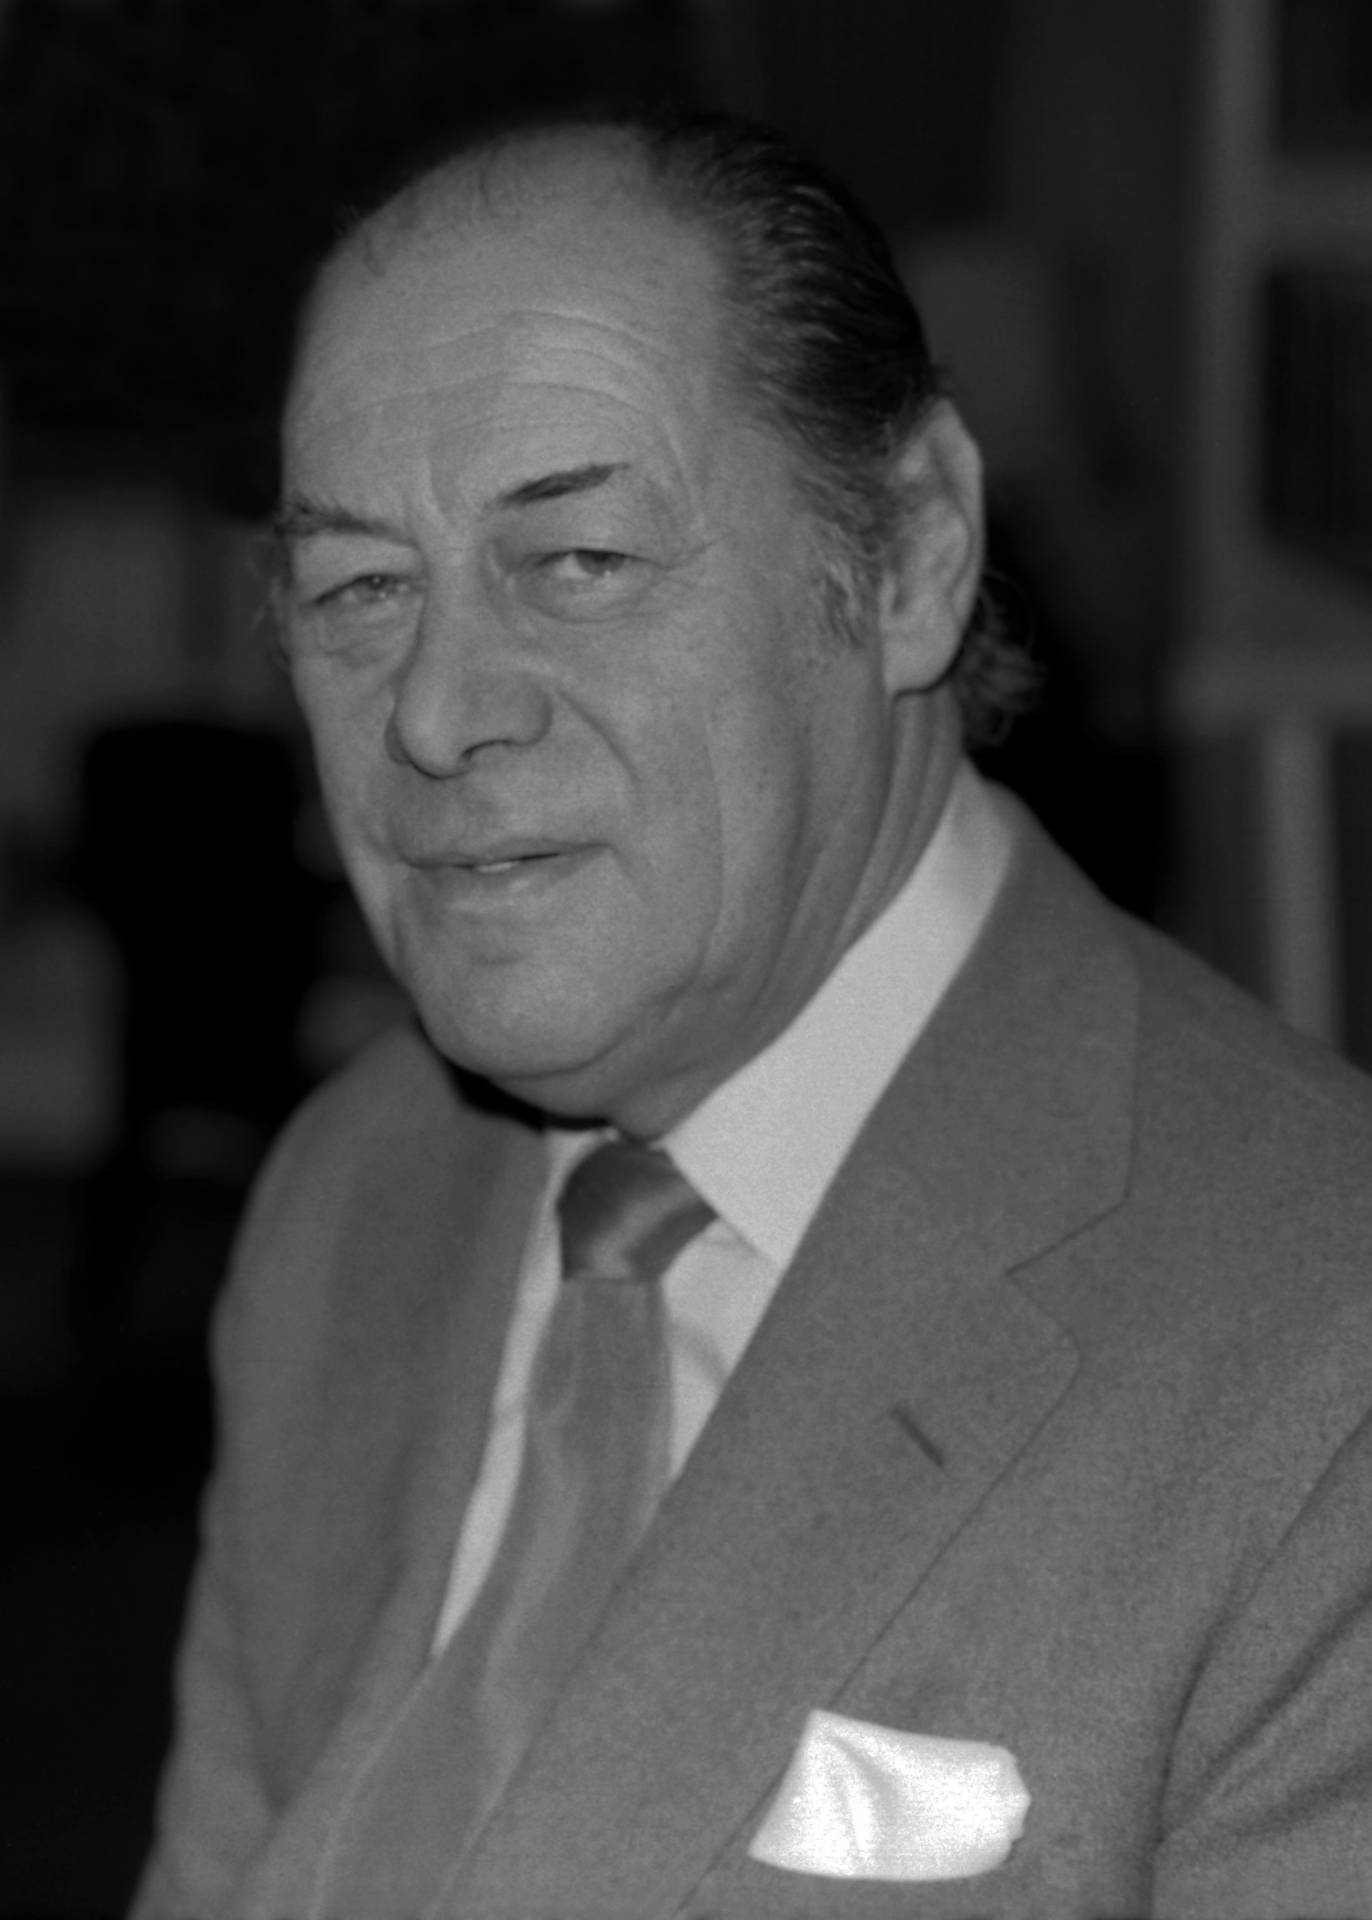 Amerikanischerschauspieler Rex Harrison In Grauem Anzug. Wallpaper